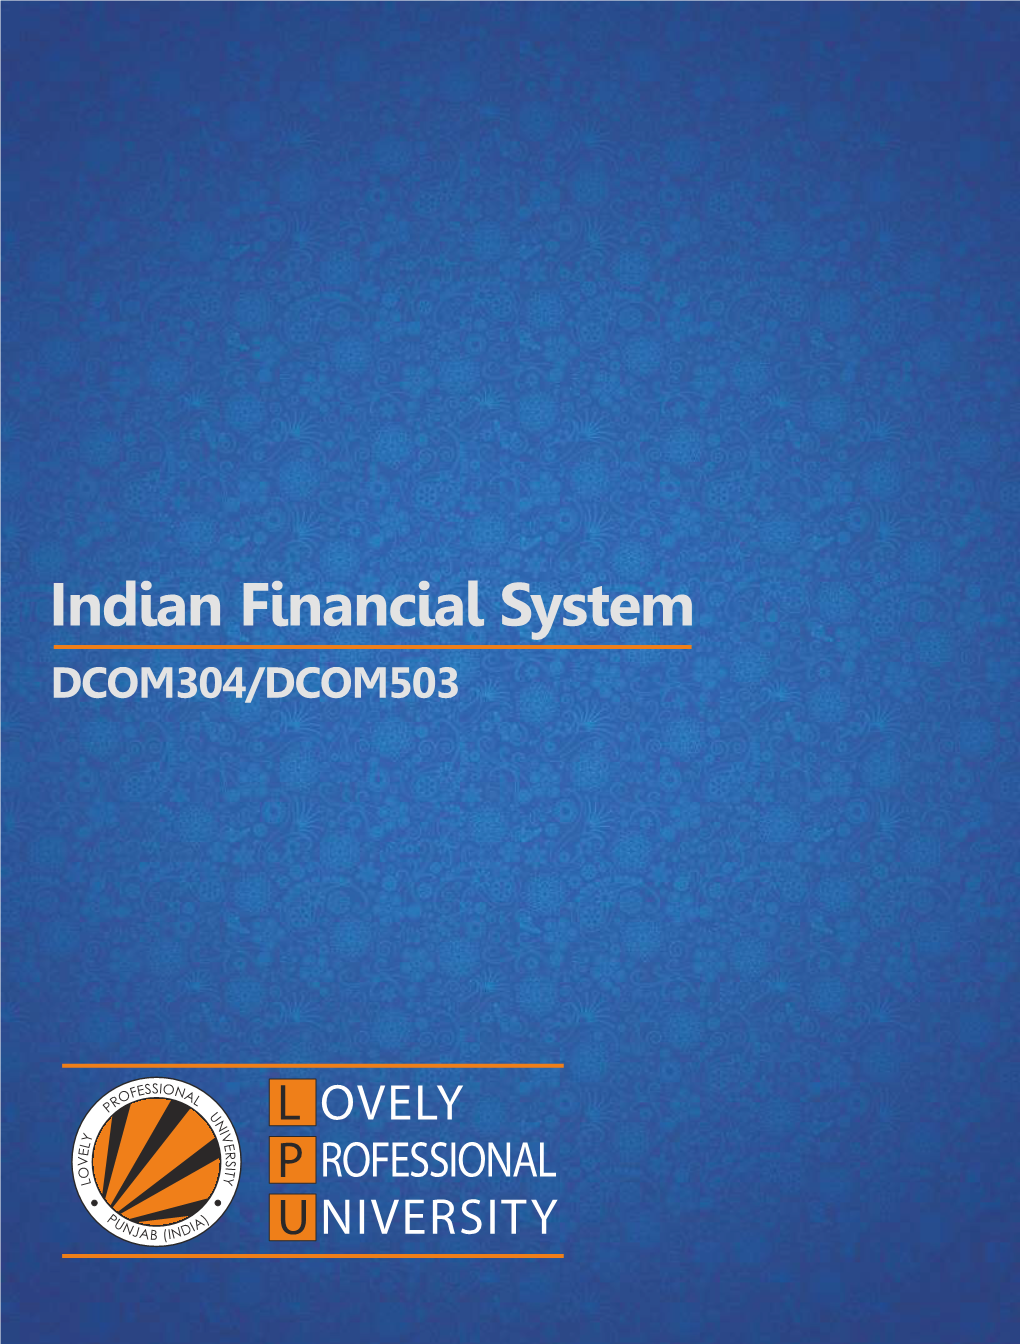 Indian Financial System DCOM304/DCOM503